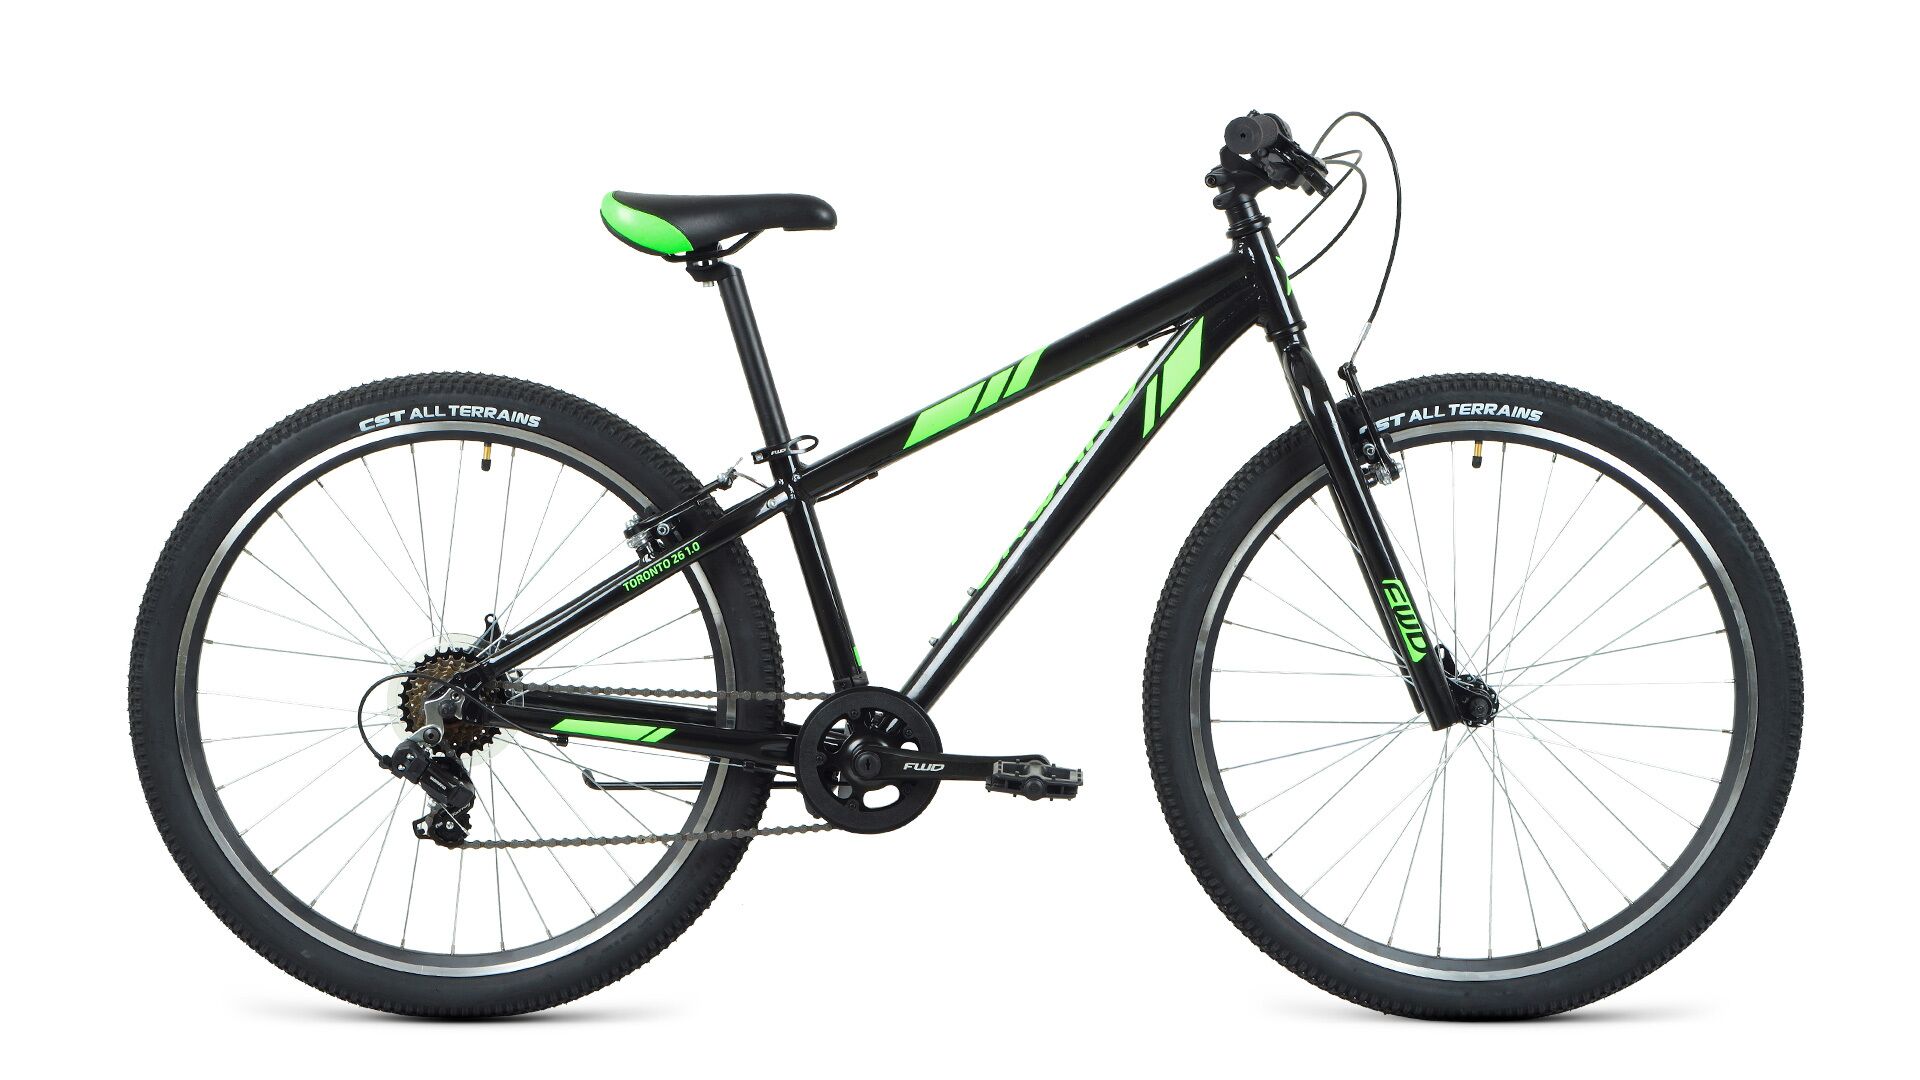 Фото выбрать и купить велосипед forward toronto 26 1.2 (2021) черный / ярко-зеленый, размер 13" велосипеды с доставкой, в магазине или со склада в СПб - большой выбор для подростка, велосипед forward toronto 26 1.2 (2021) черный / ярко-зеленый, размер 13" велосипеды в наличии - интернет-магазин Мастерская Тимура